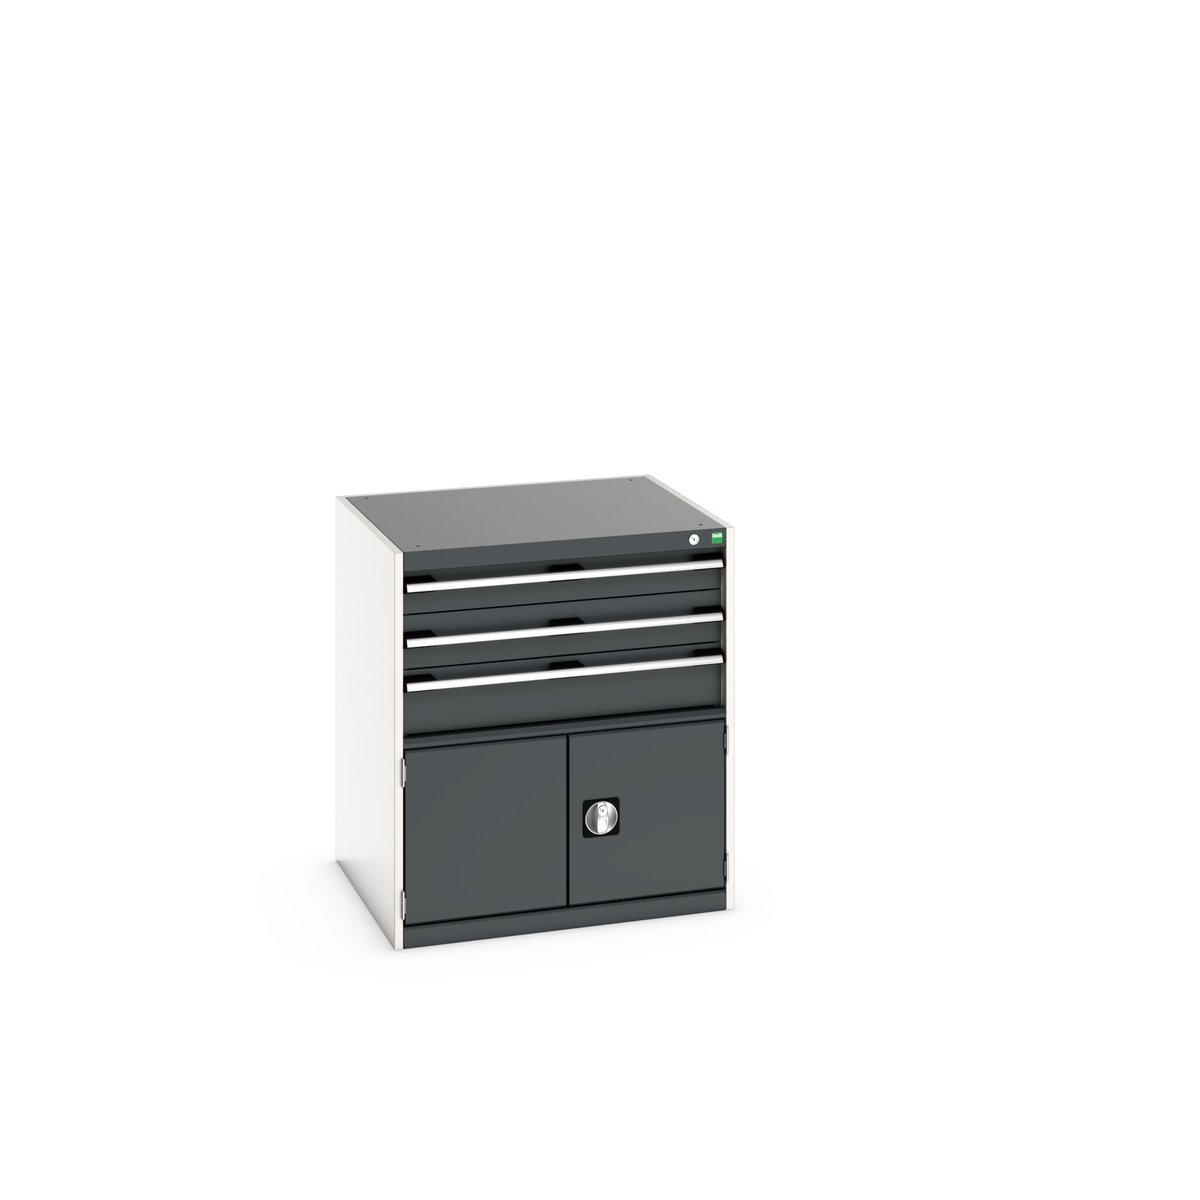 40028105. - cubio drawer-door cabinet